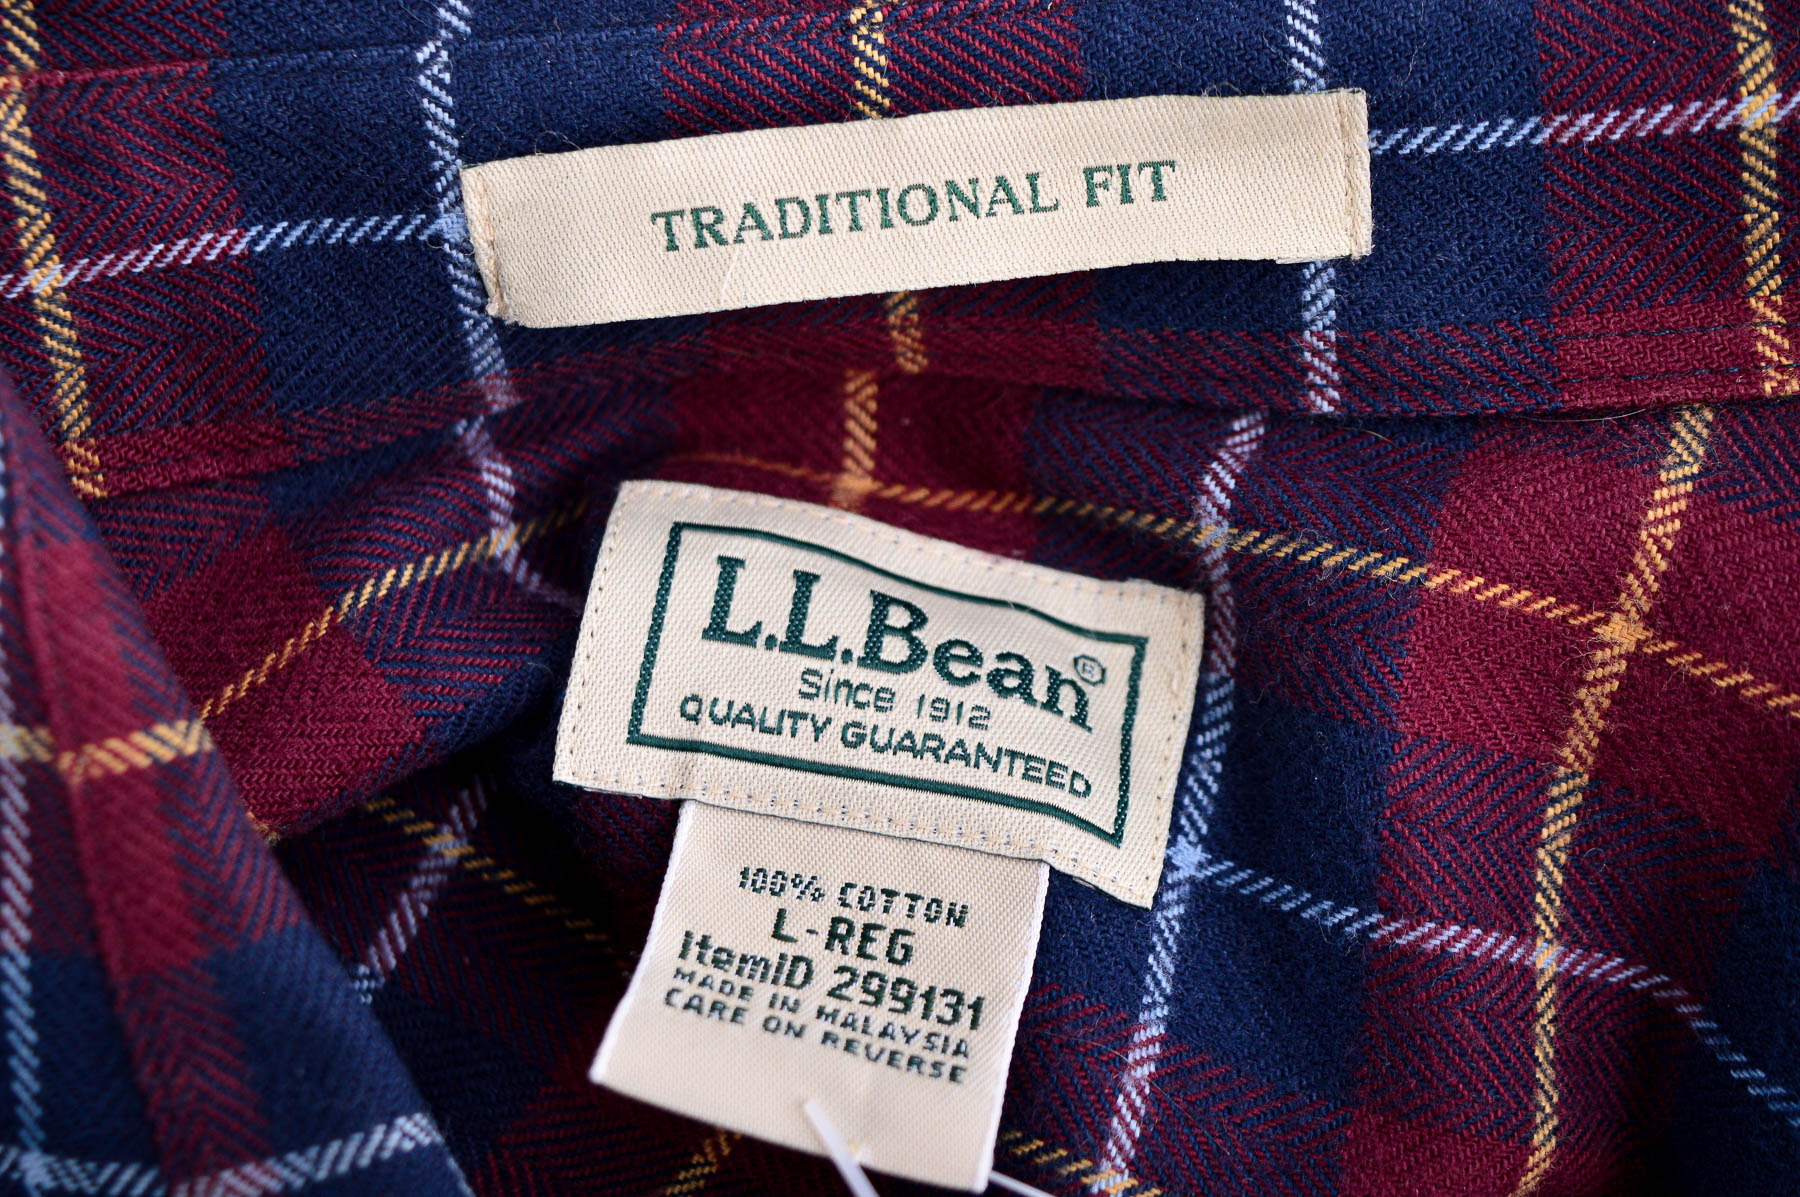 Men's shirt - L.L.Bean - 2